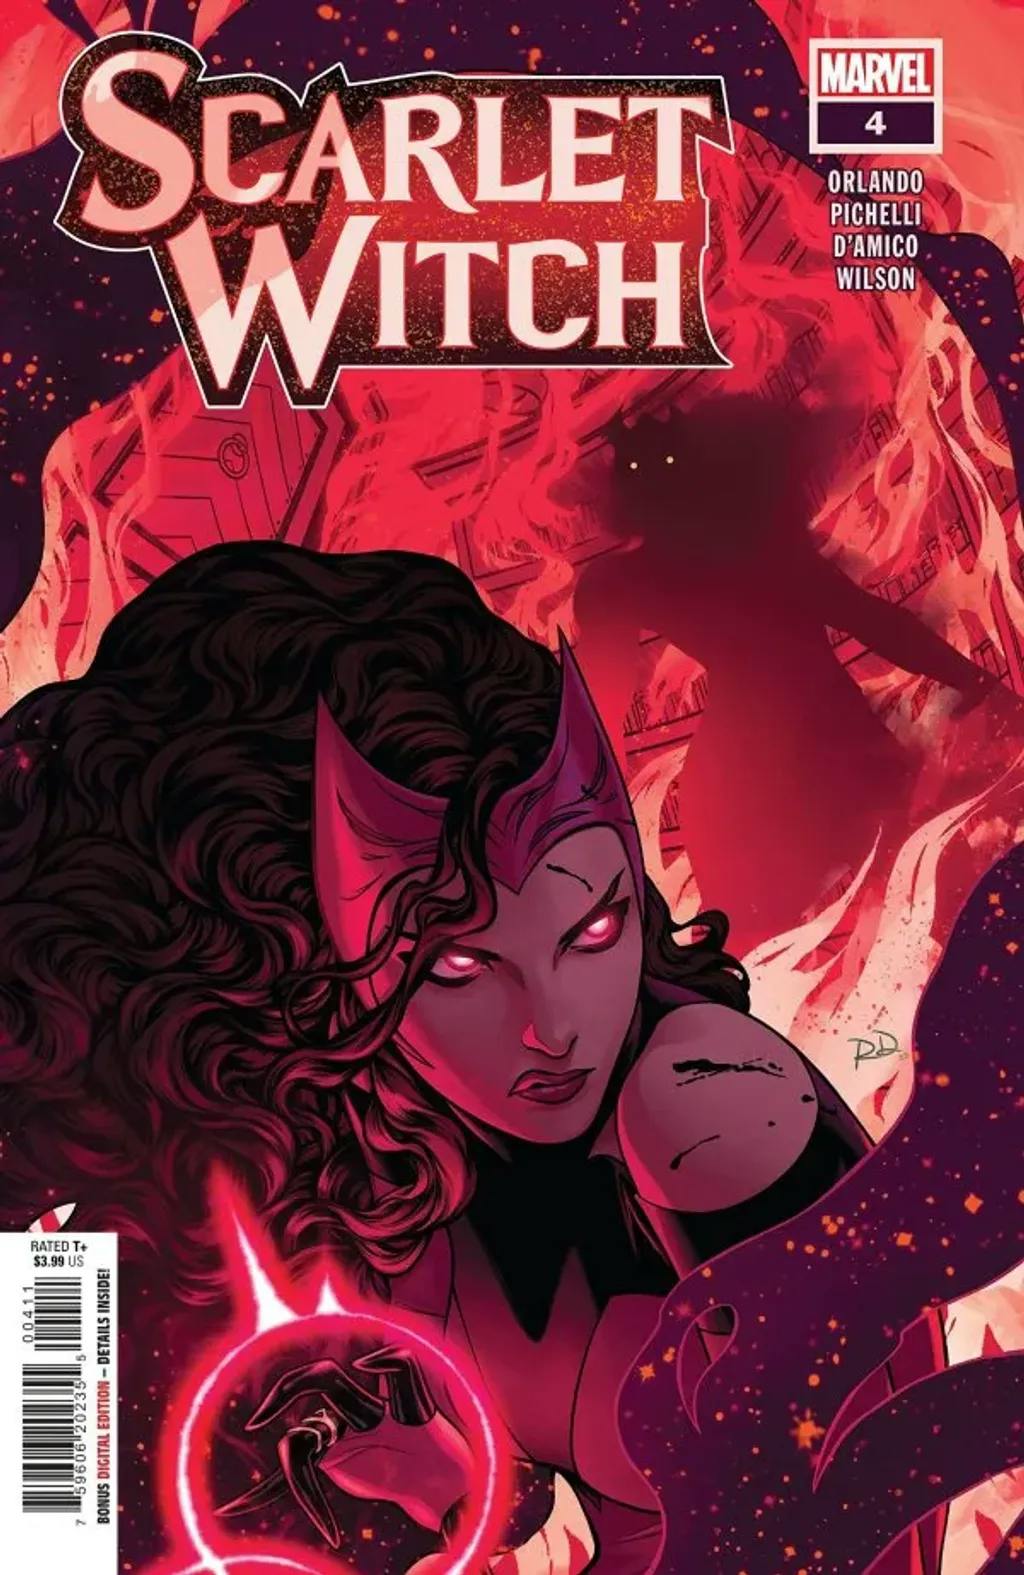 Scarlet Witch #4 By Steve Orlando, Sara Pichelli, Elisabetta D’Amico, and Matt Wilson